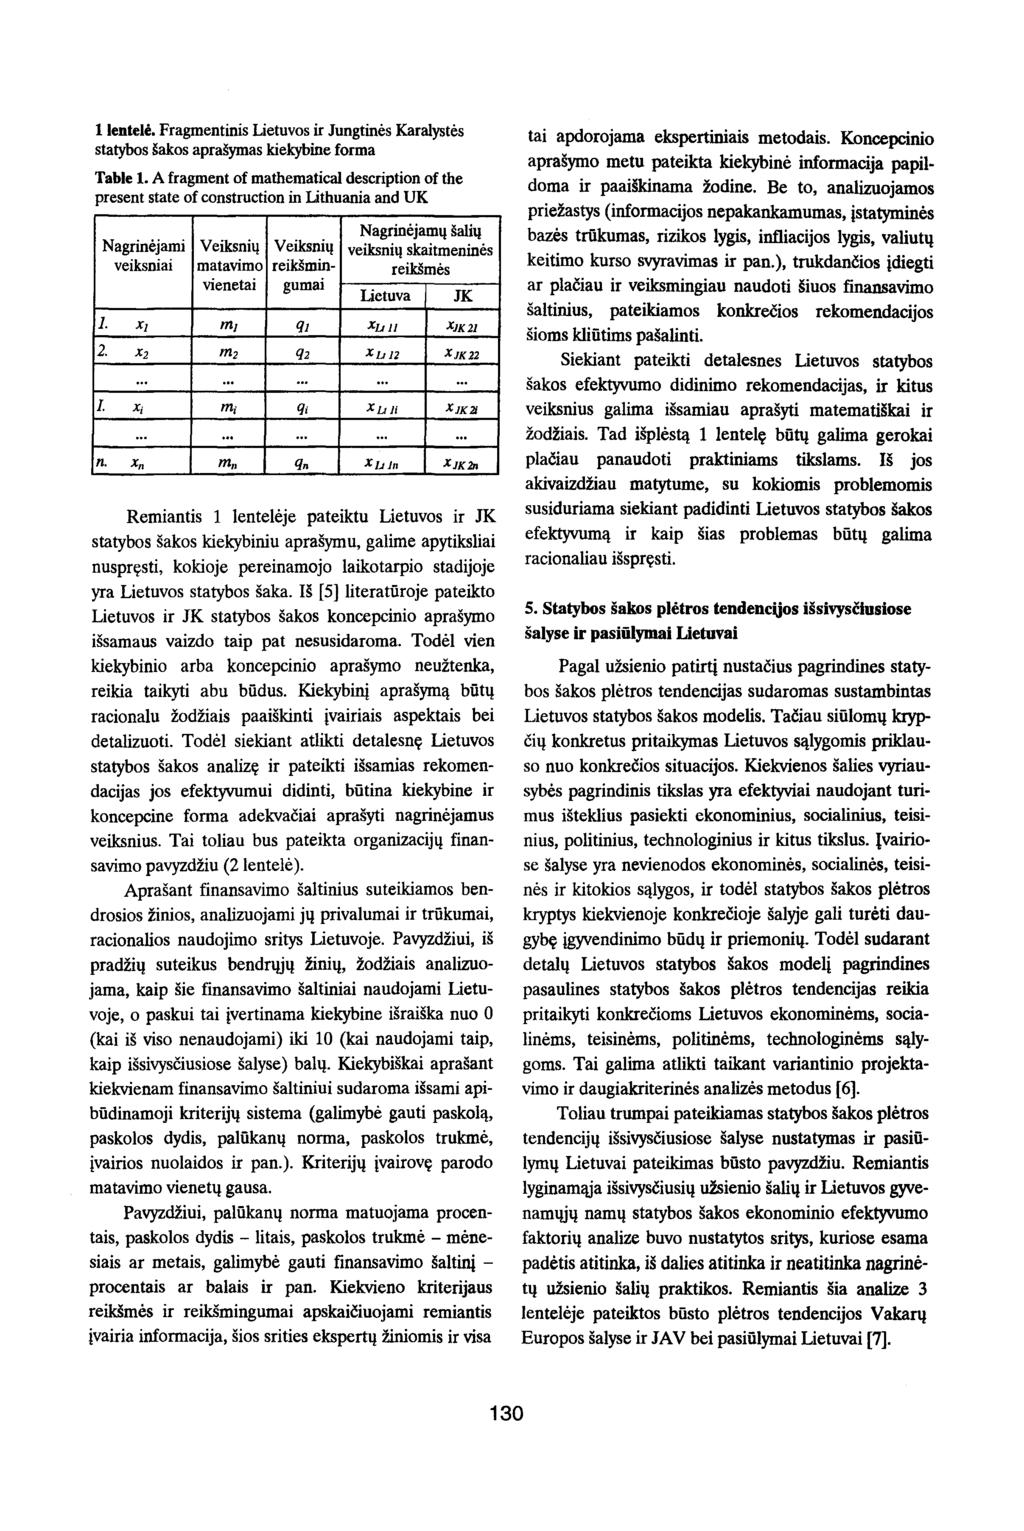 llentele. Fragmentinis Lietuvos ir Jungtines Karalystes statybos sakos aprasymas kiekybine forma Table 1.